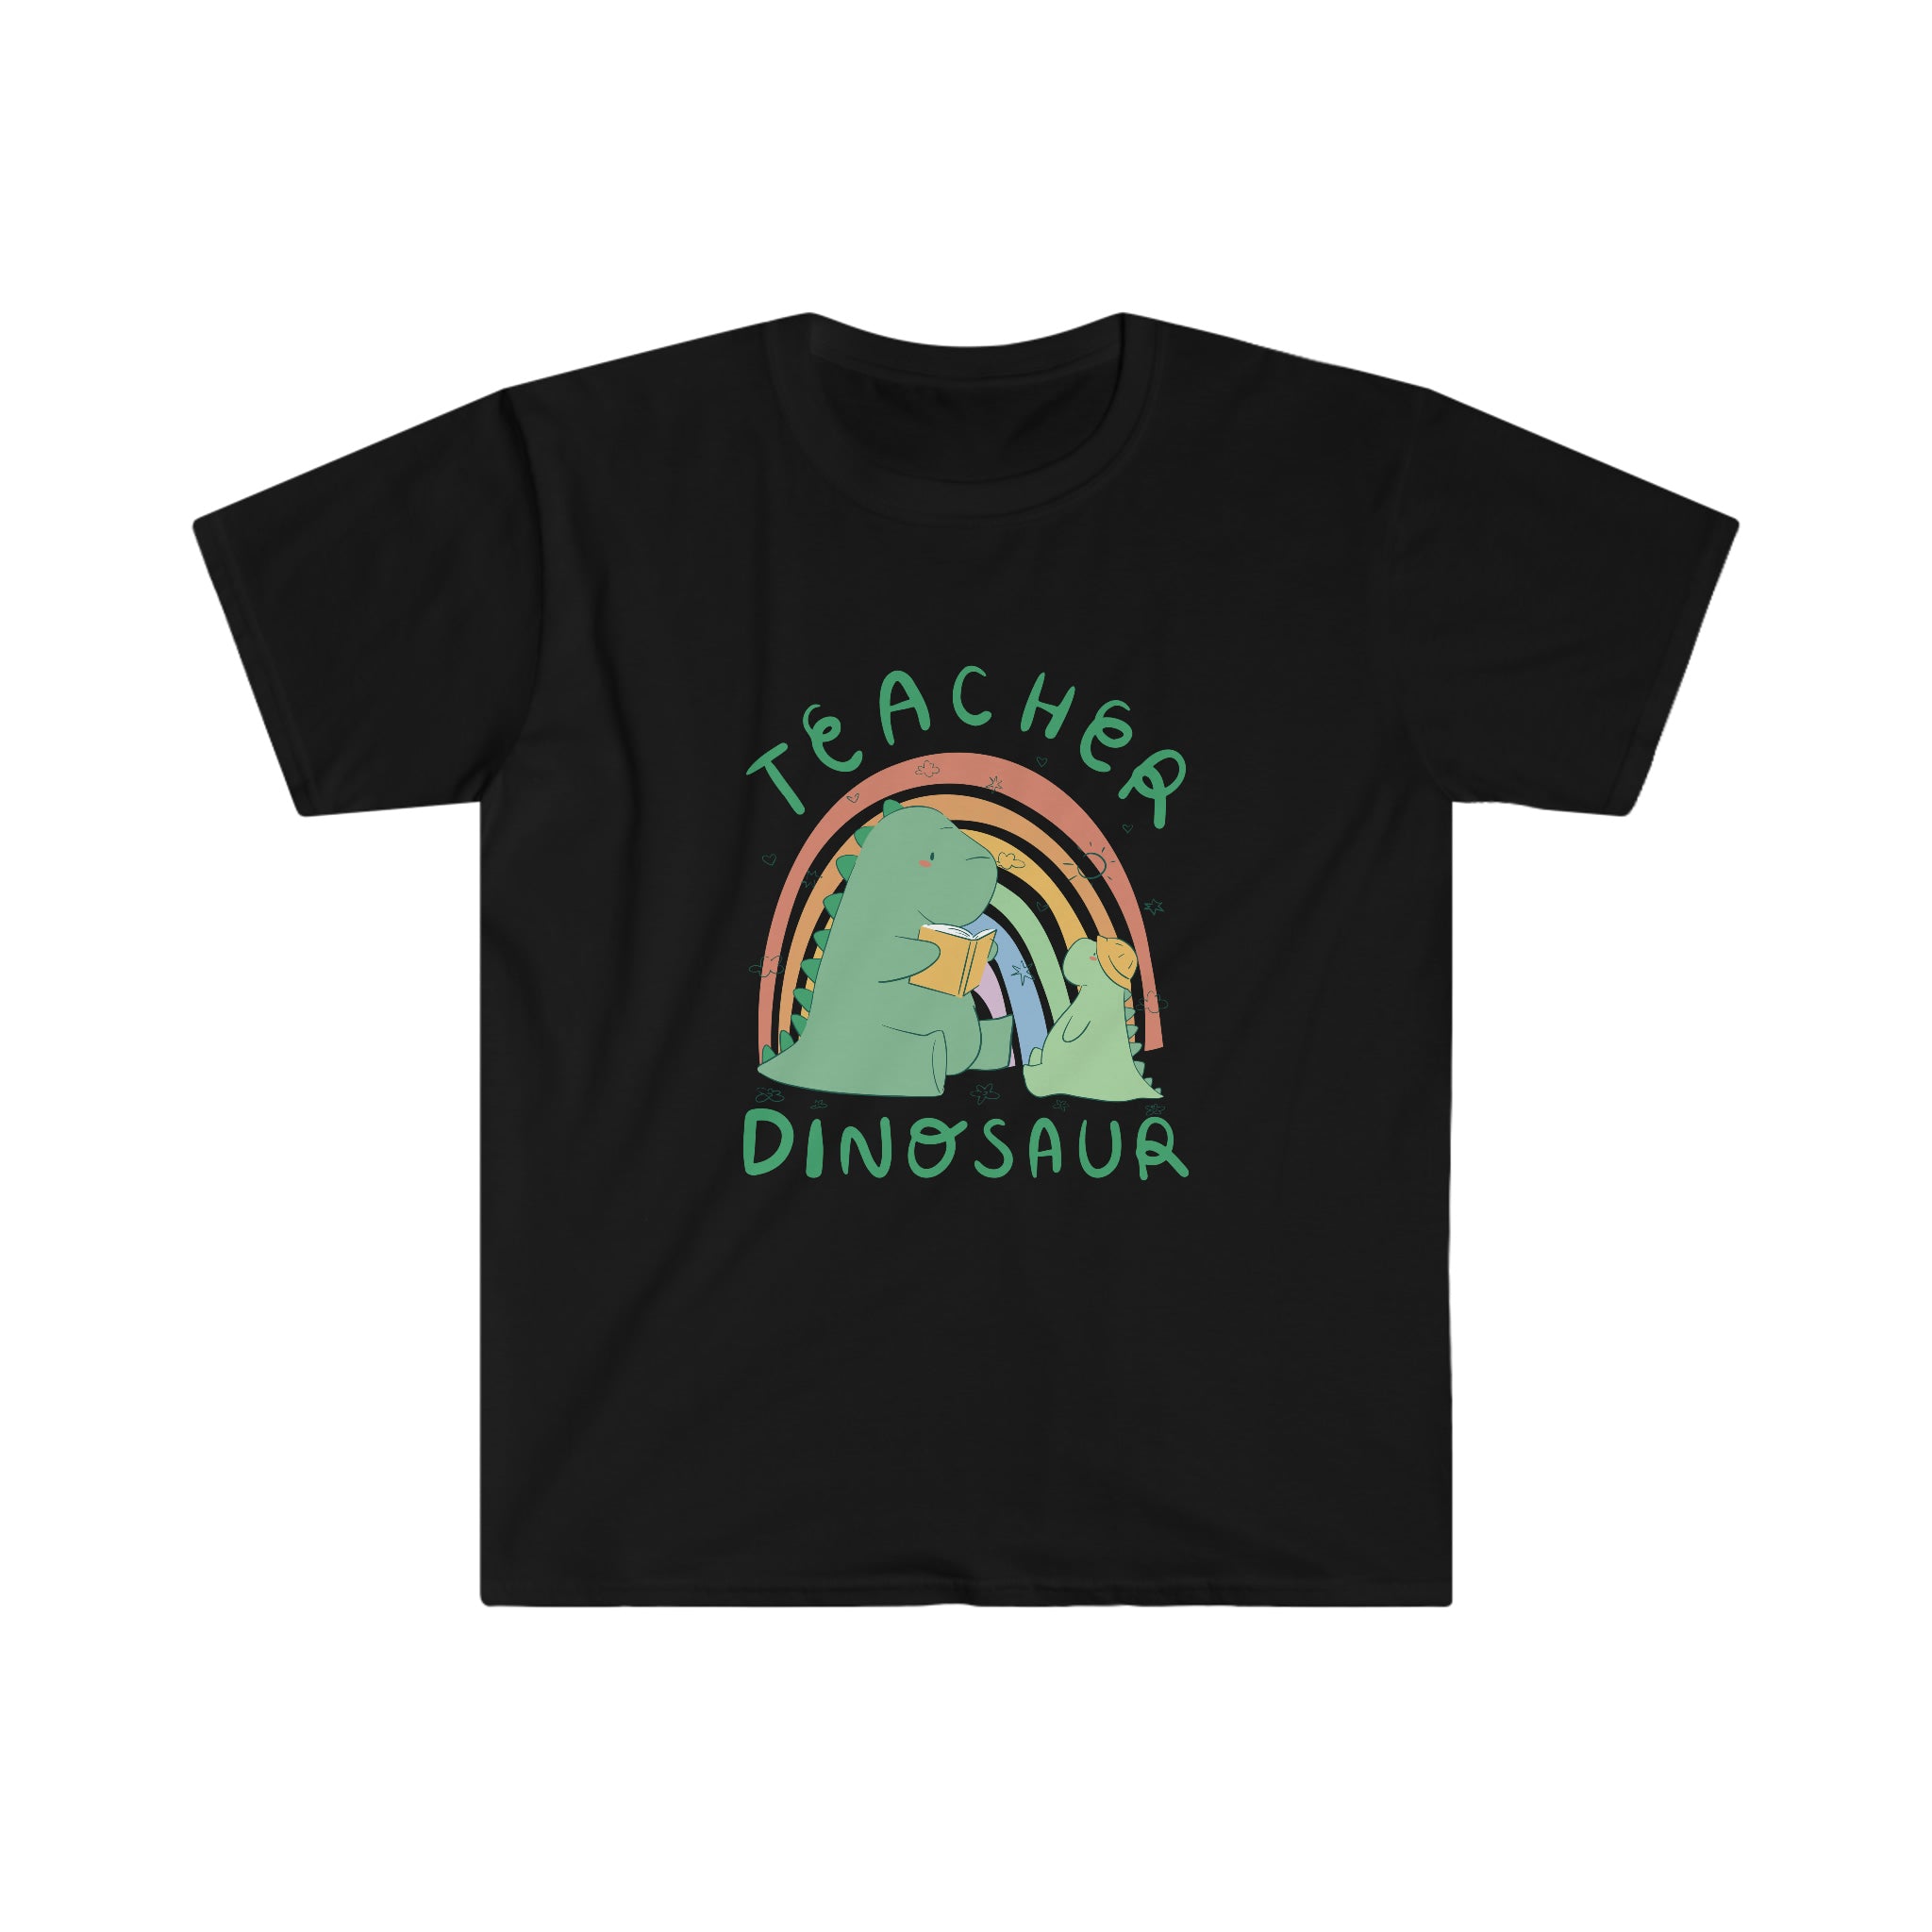 A Teacher Dinosaur T-Shirt featuring a dinosaur design.